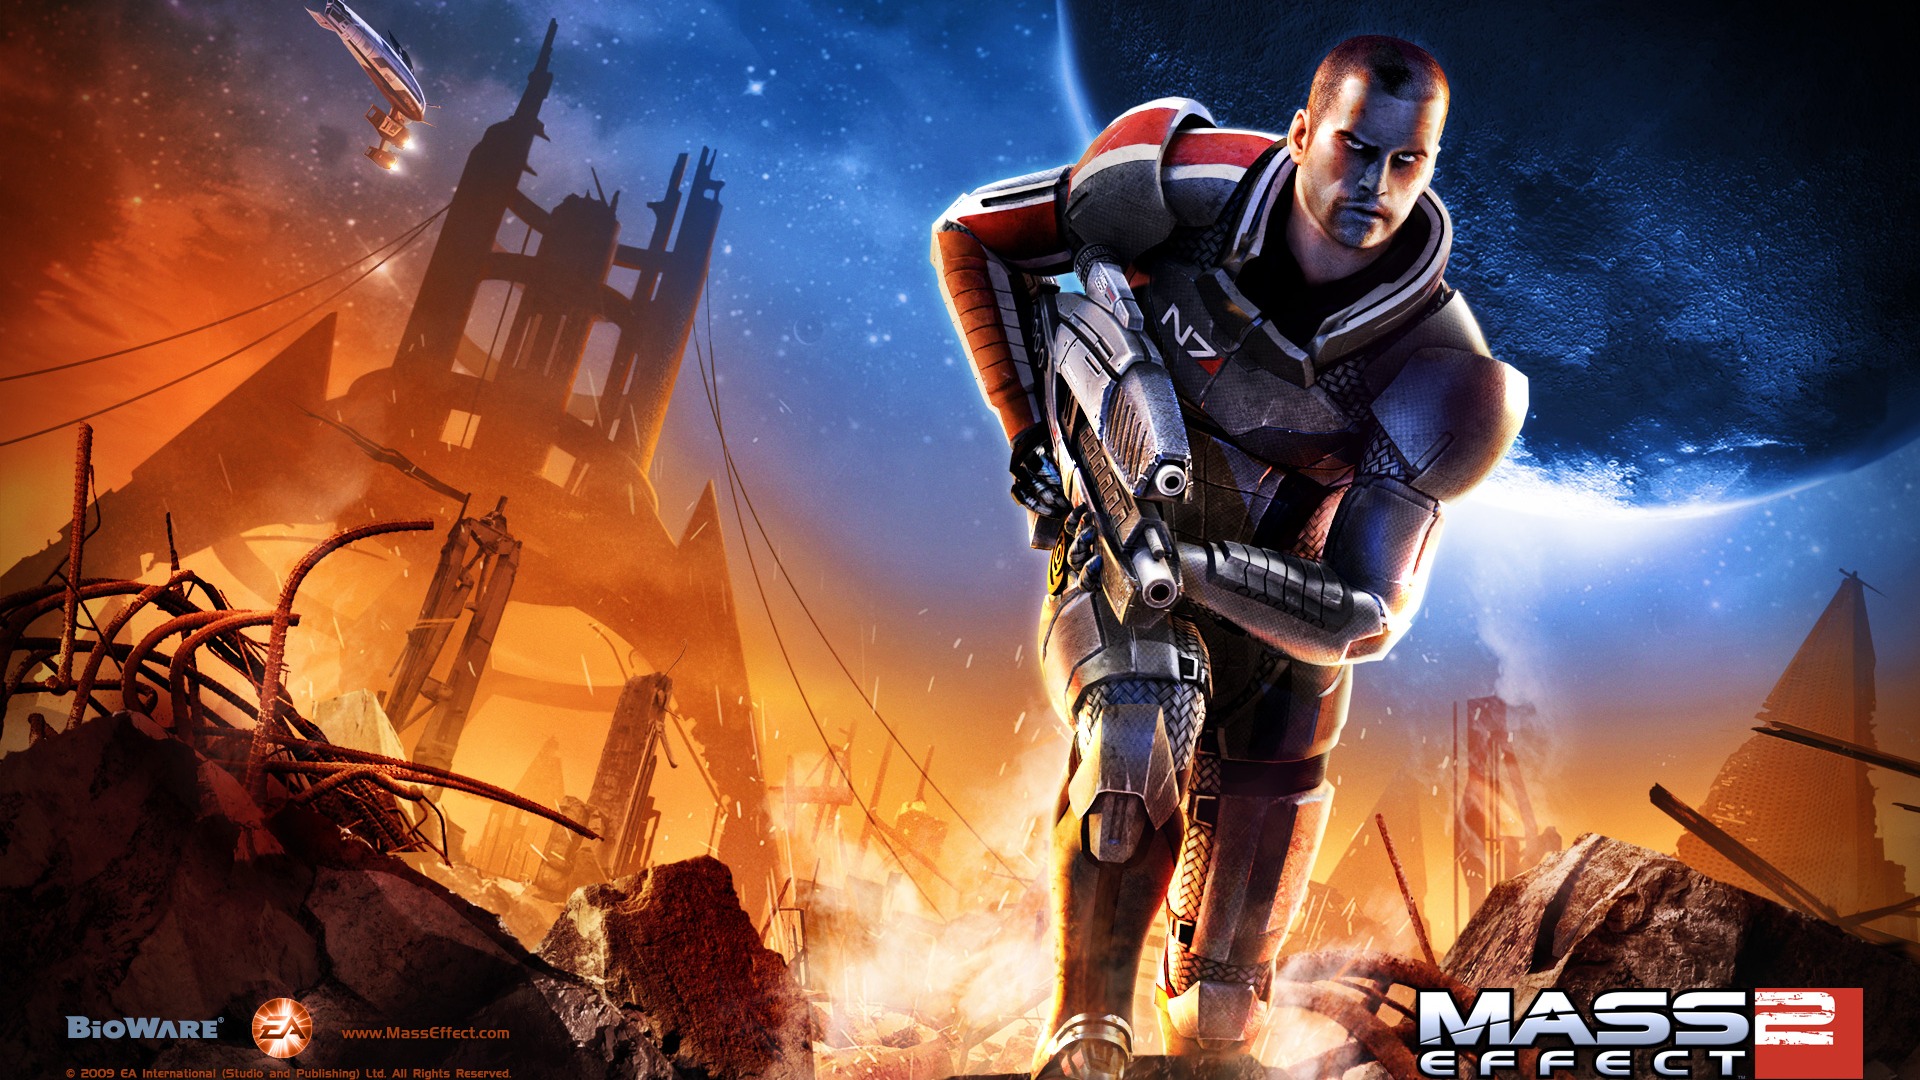 Mass Effect 2 HD wallpapers #11 - 1920x1080